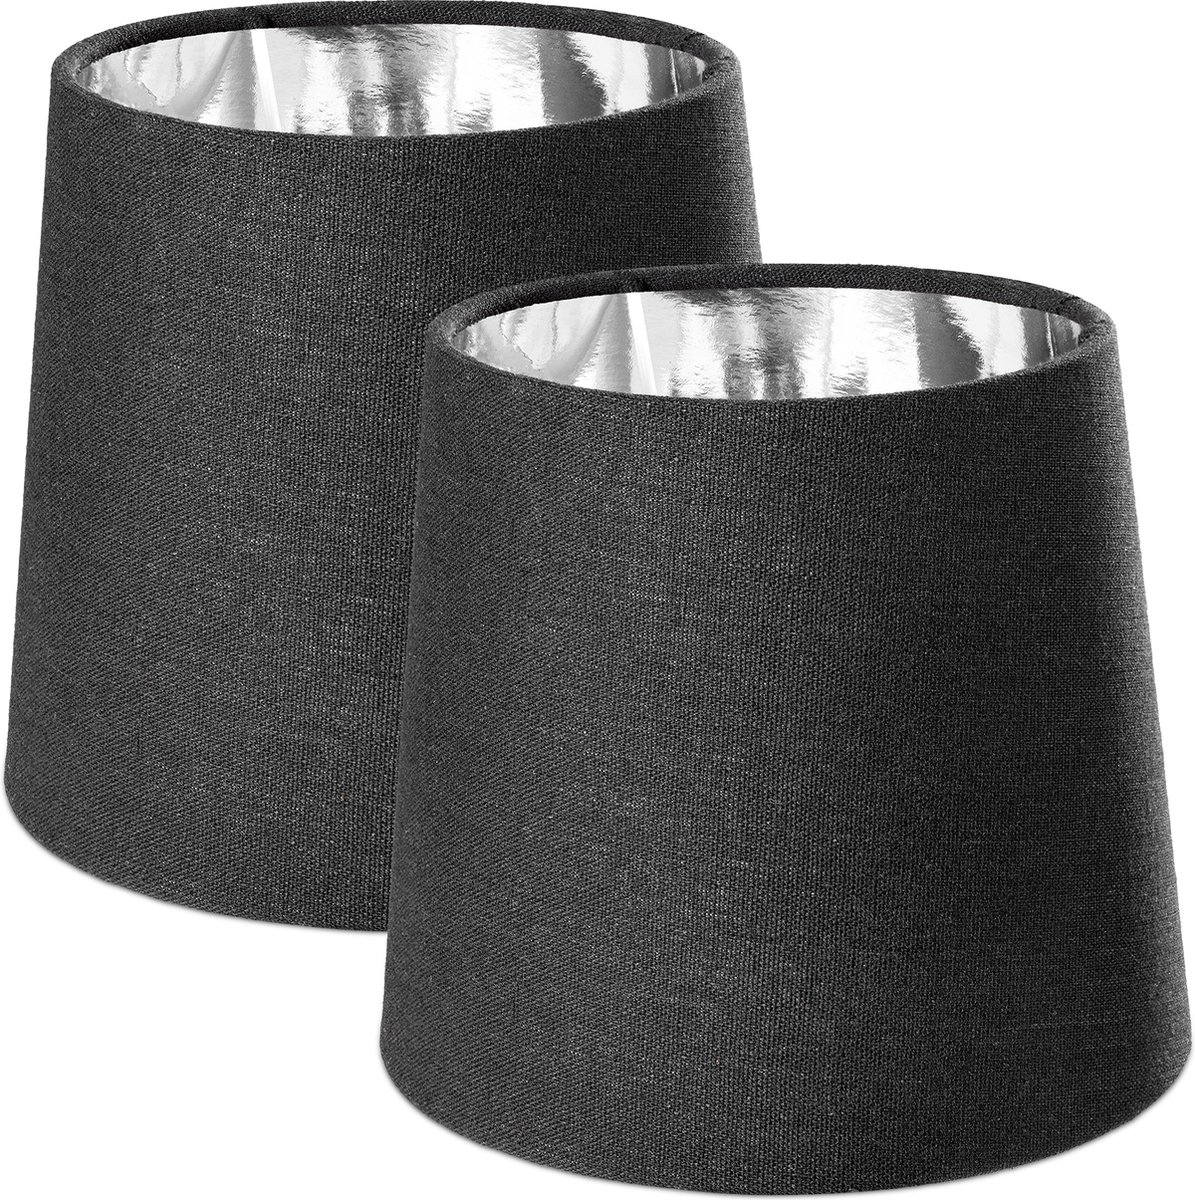 Navaris 2x lampenkap voor tafellamp - E14 fitting - 15,2 cm hoog - Set van 2 ronde lampenkappen - Zwart/Zilverkleurig - Navaris